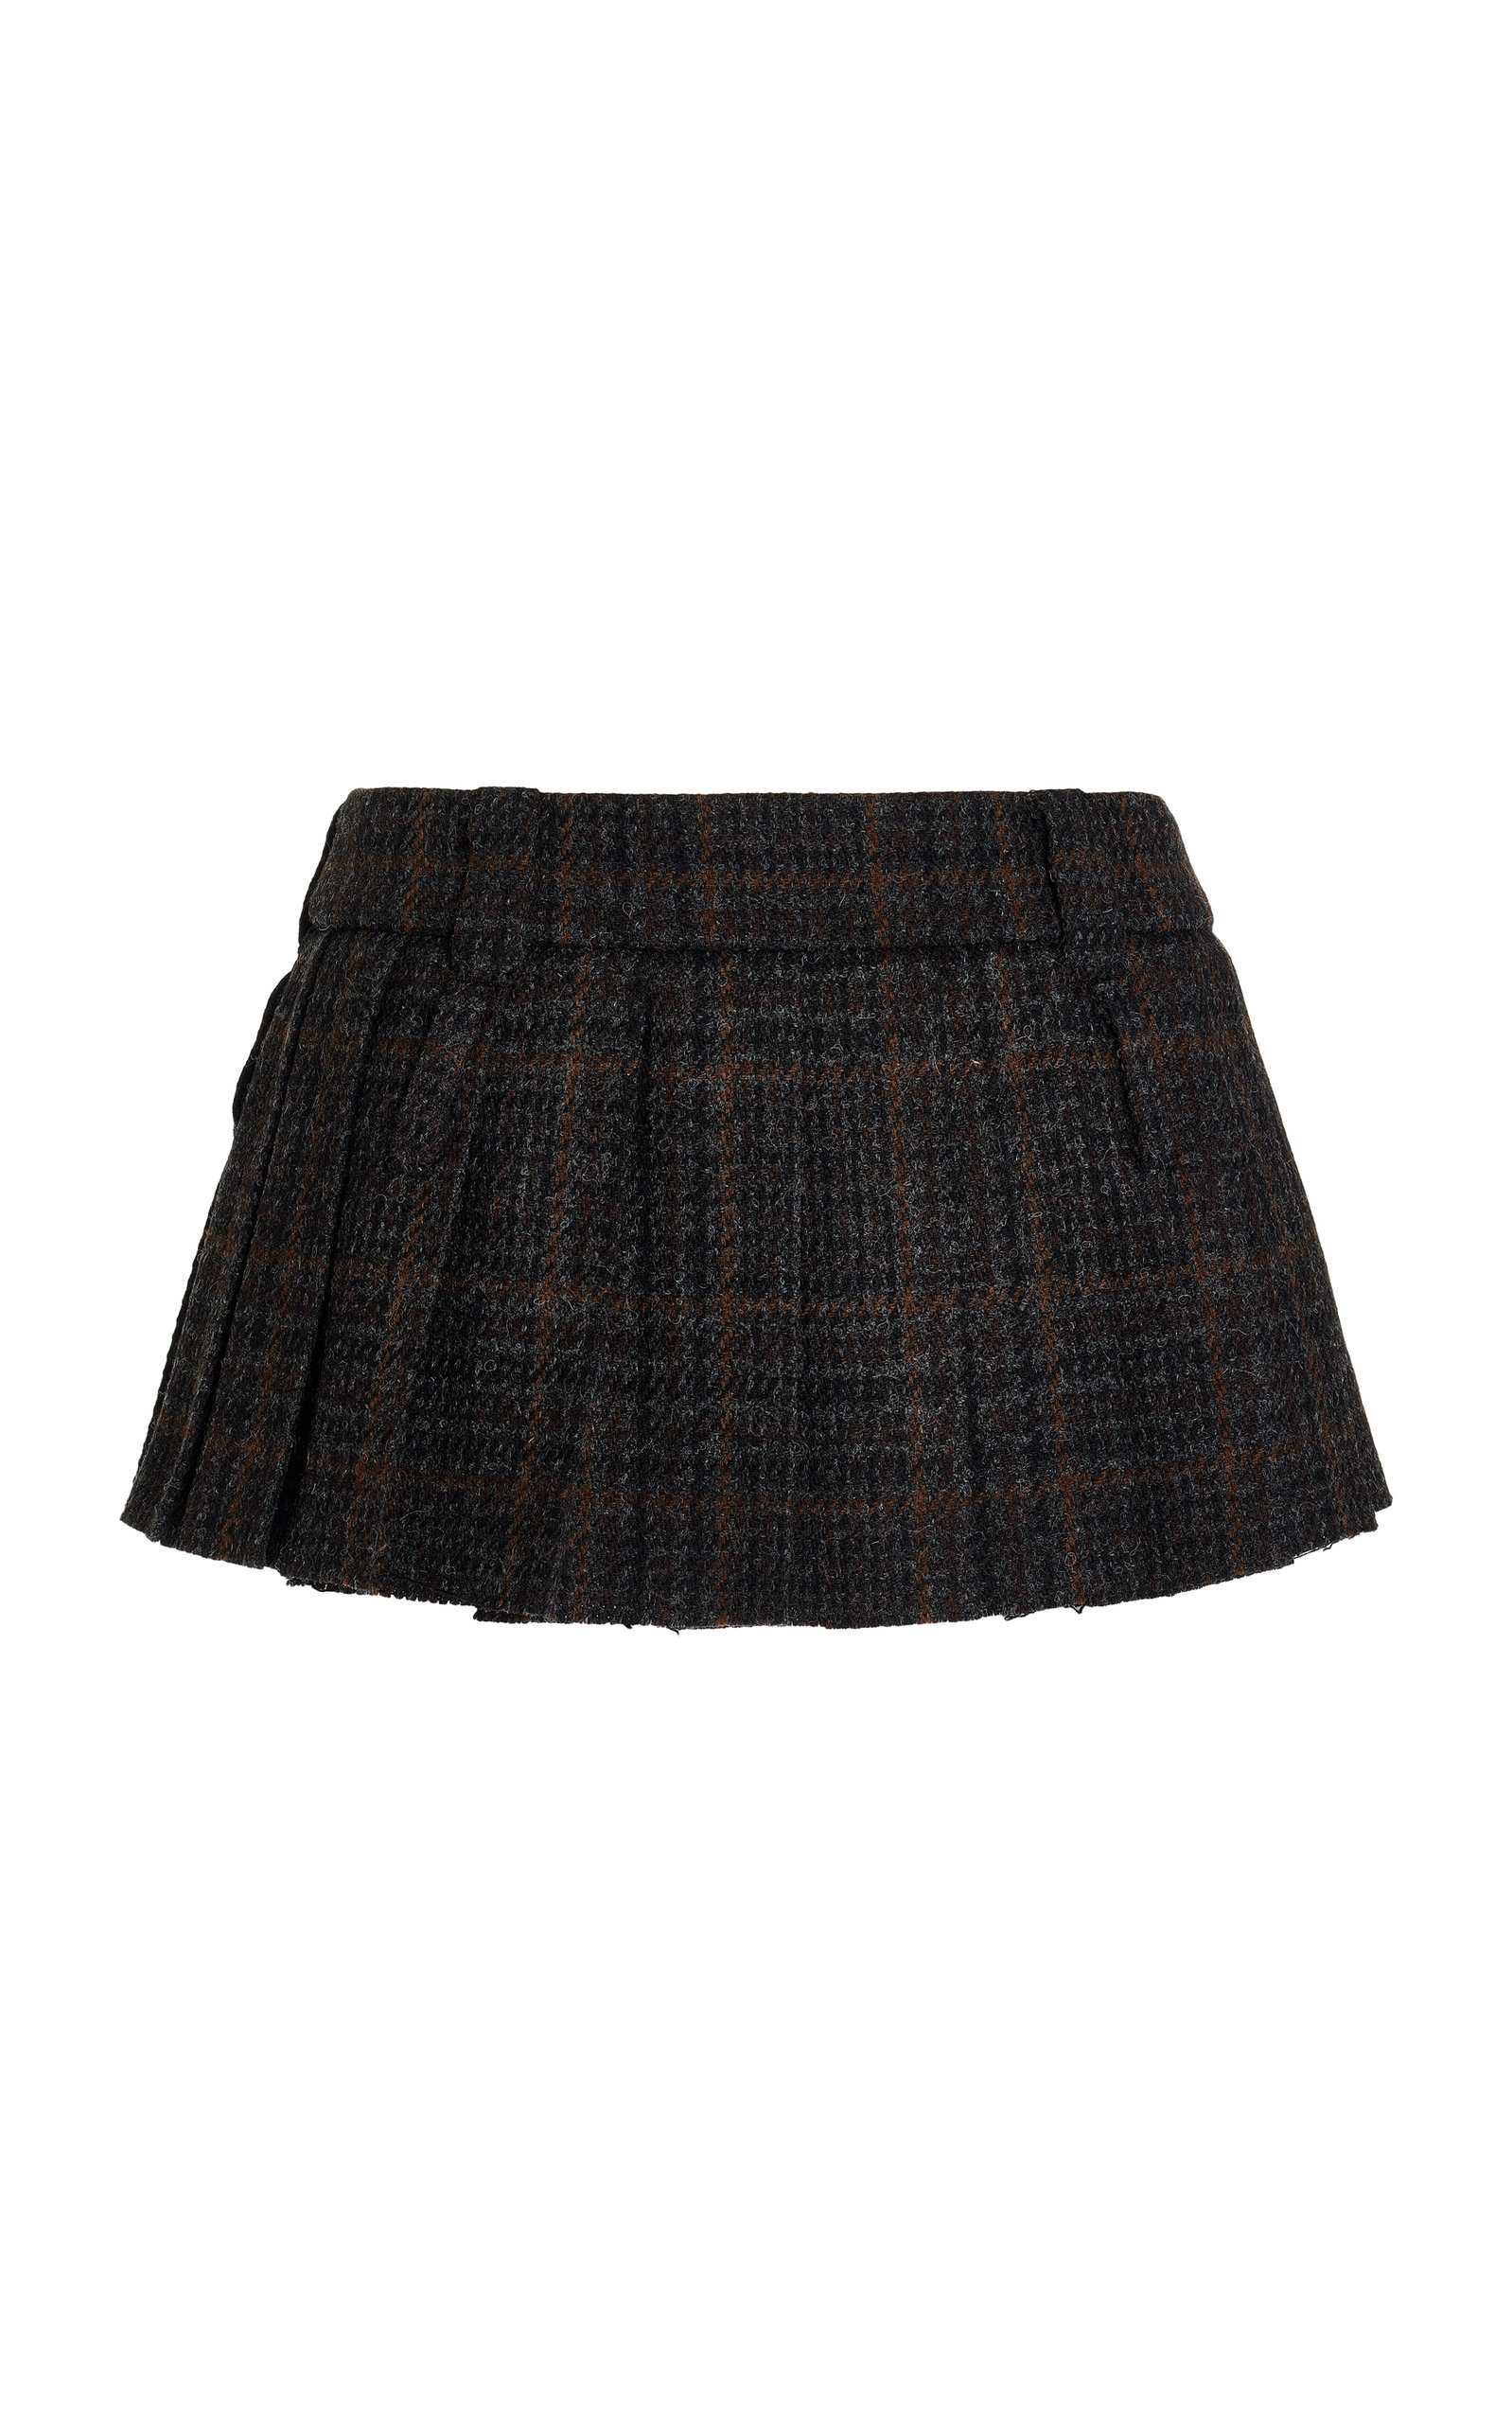 Miu Miu - Women's Plaid Mini Skirt - Plaid - IT 38 - Moda Operandi